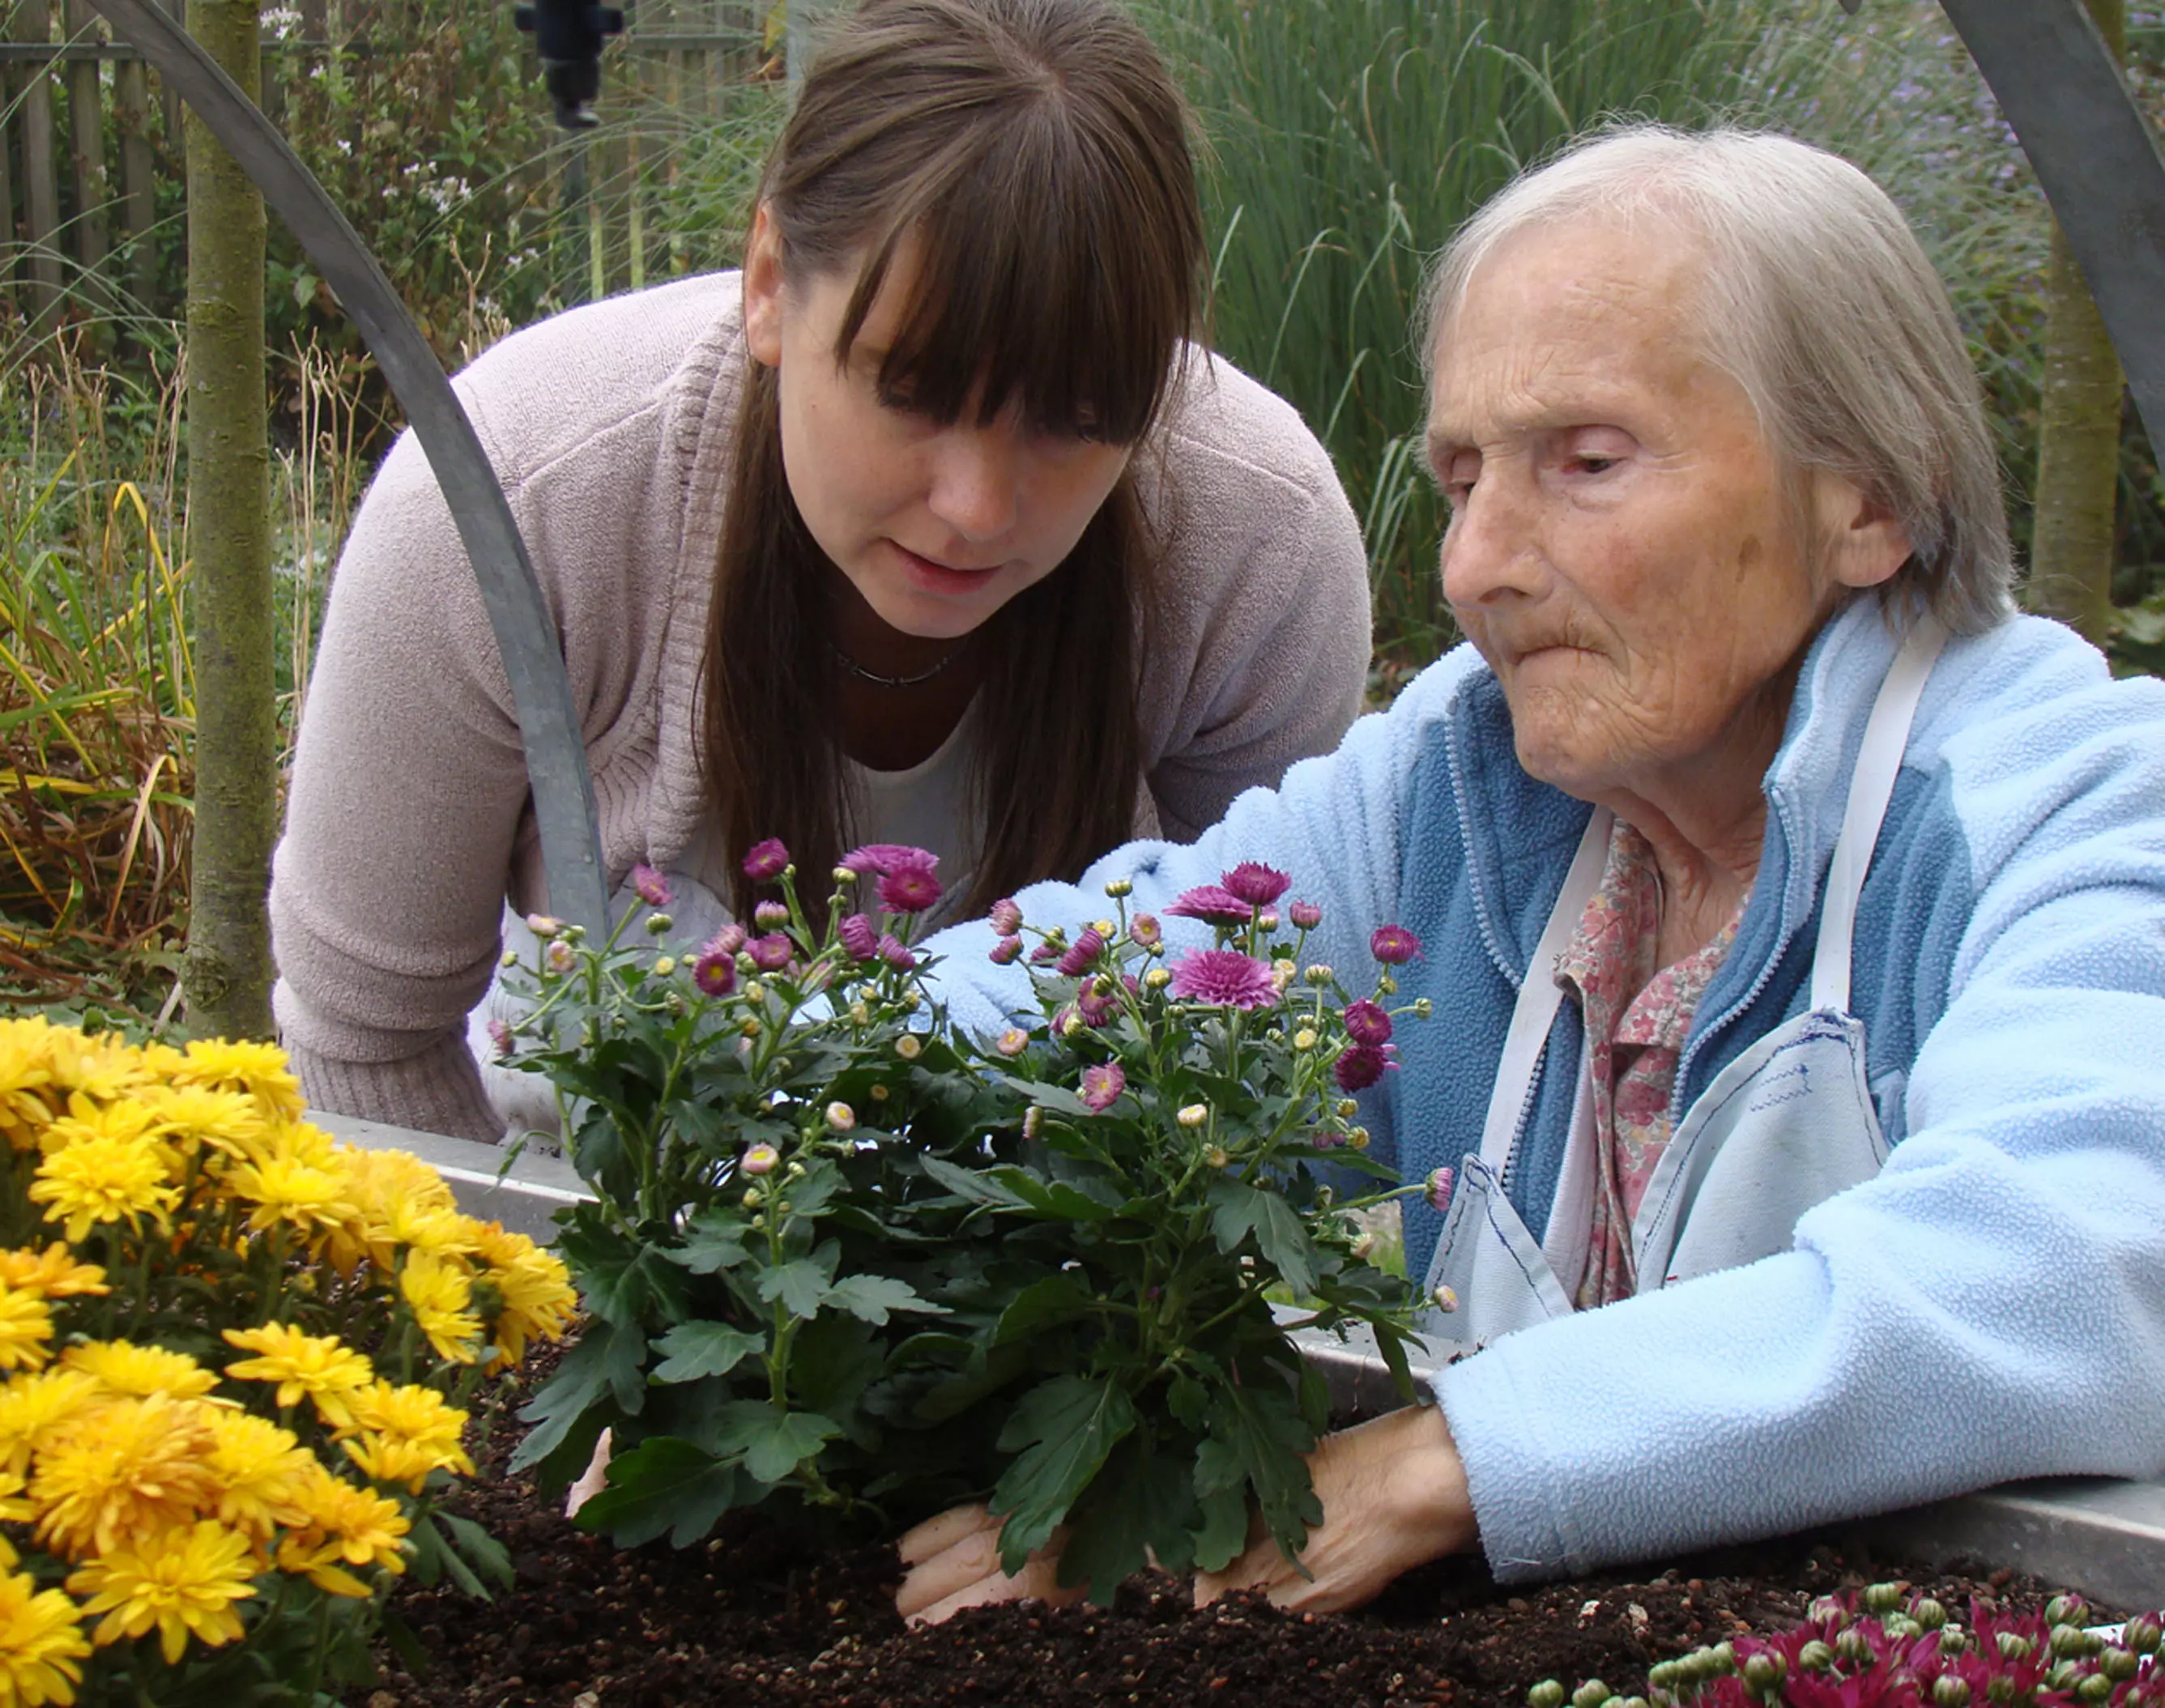 Neuer CAS-Lehrgang für Gartentherapie startet am 15. März 2013